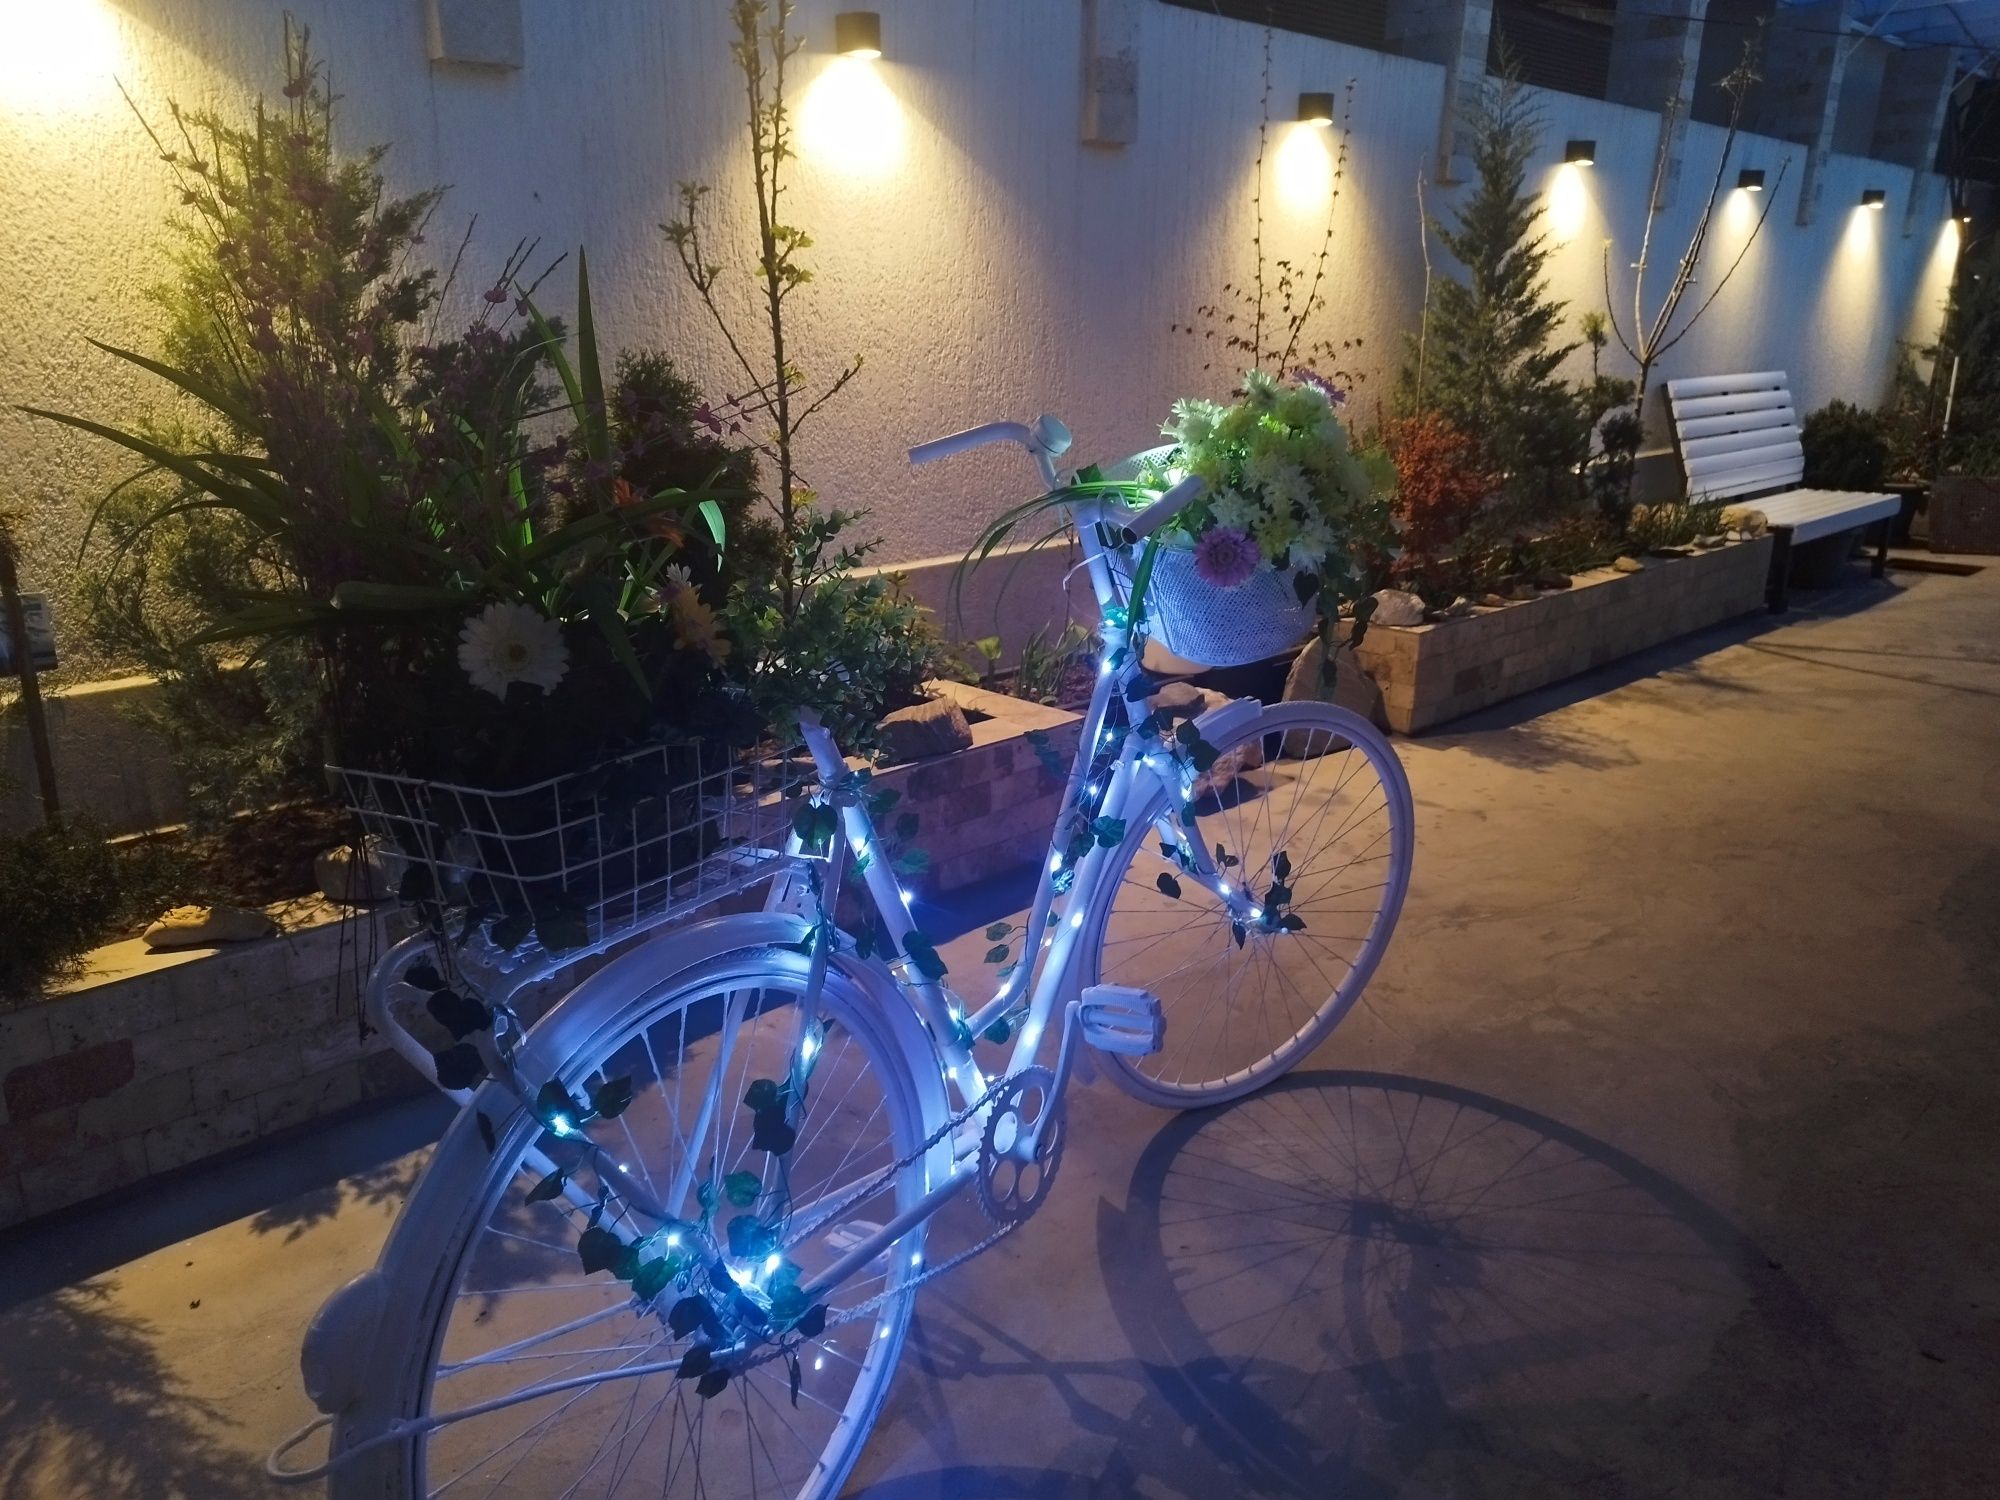 Vând bicicleta decorativă